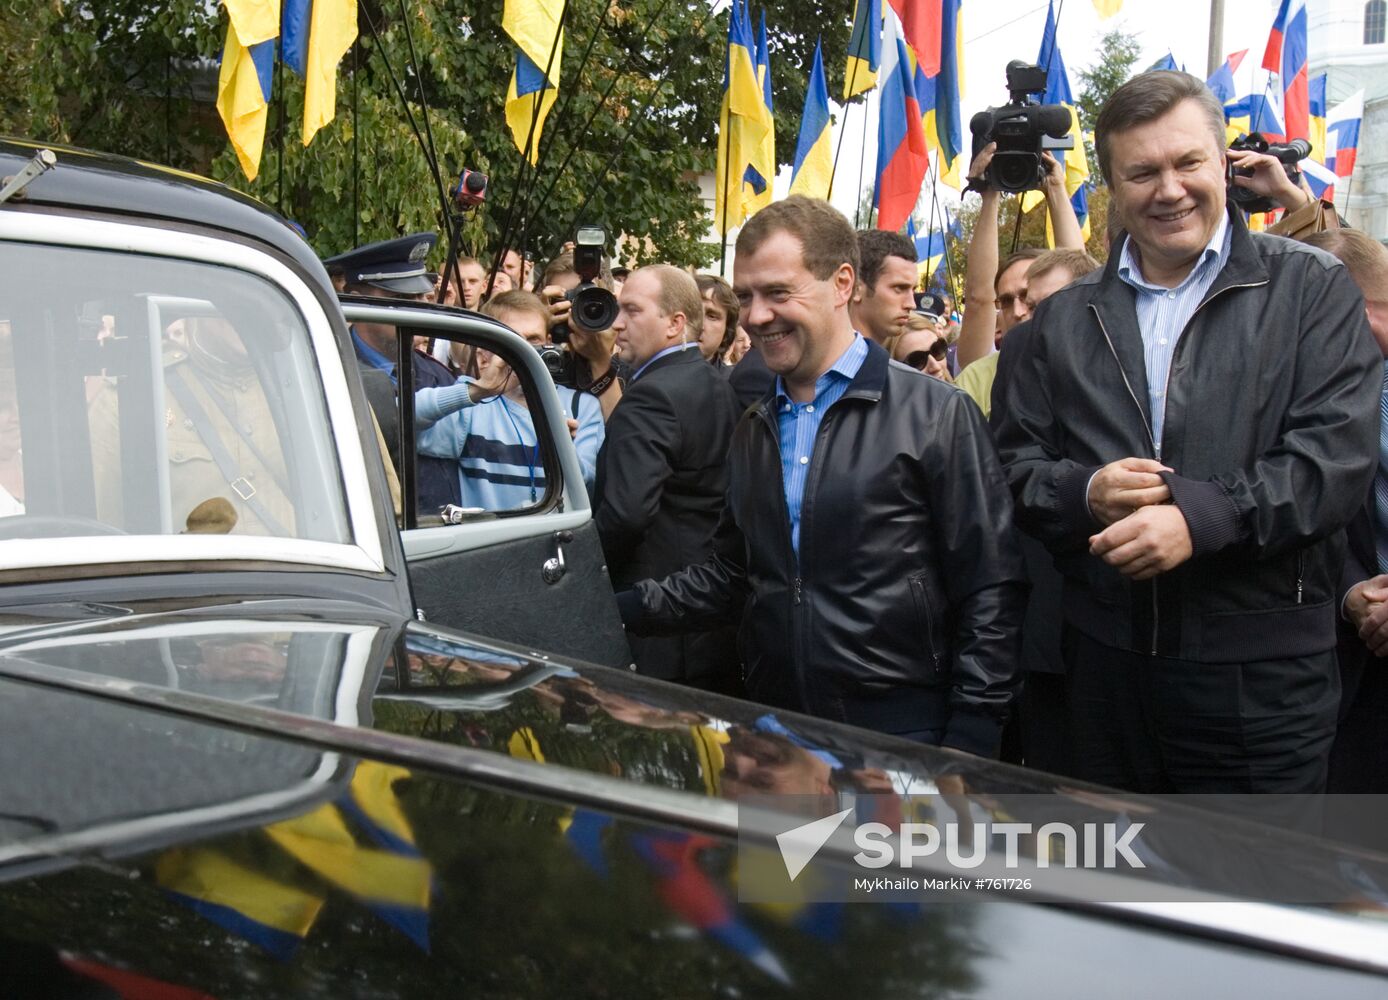 Dmitry Medvedev and Viktor Yanukovich arrive in Glukhov